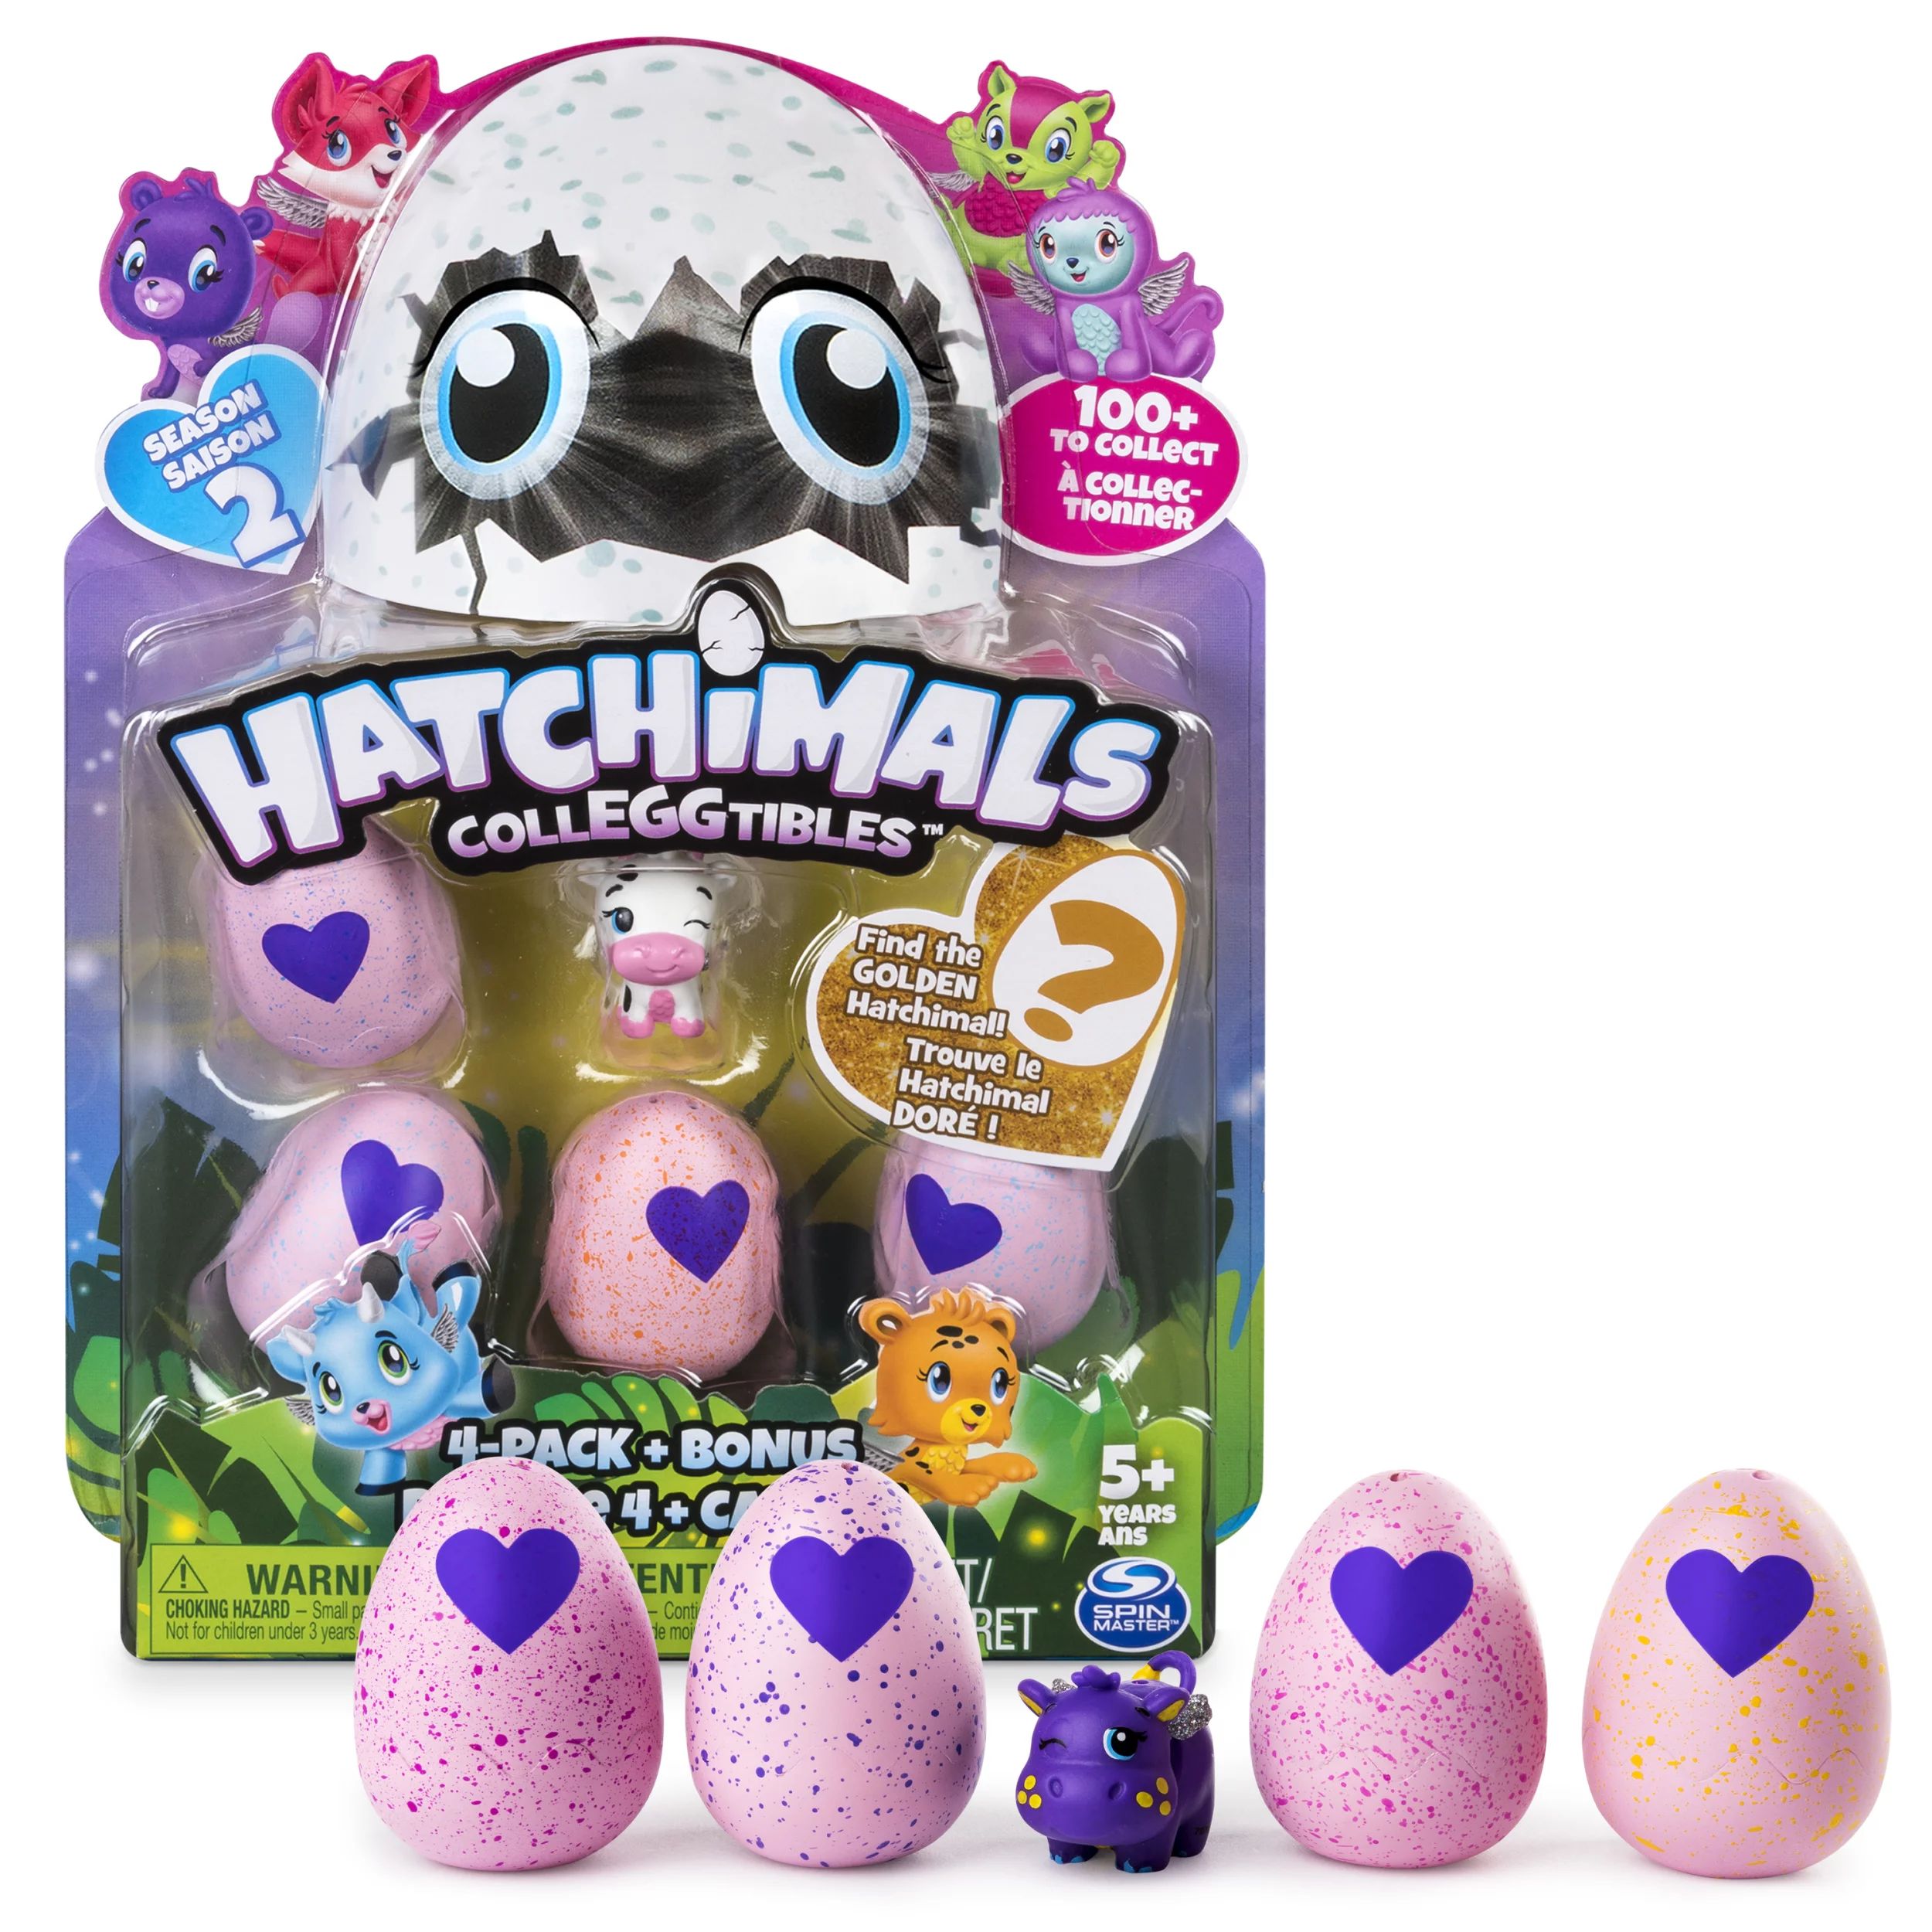 Hatchimals CollEGGtibles Season 2, 4 Pack + Bonus (Styles & Colors May Vary) by Spin Master - Wal... | Walmart (US)